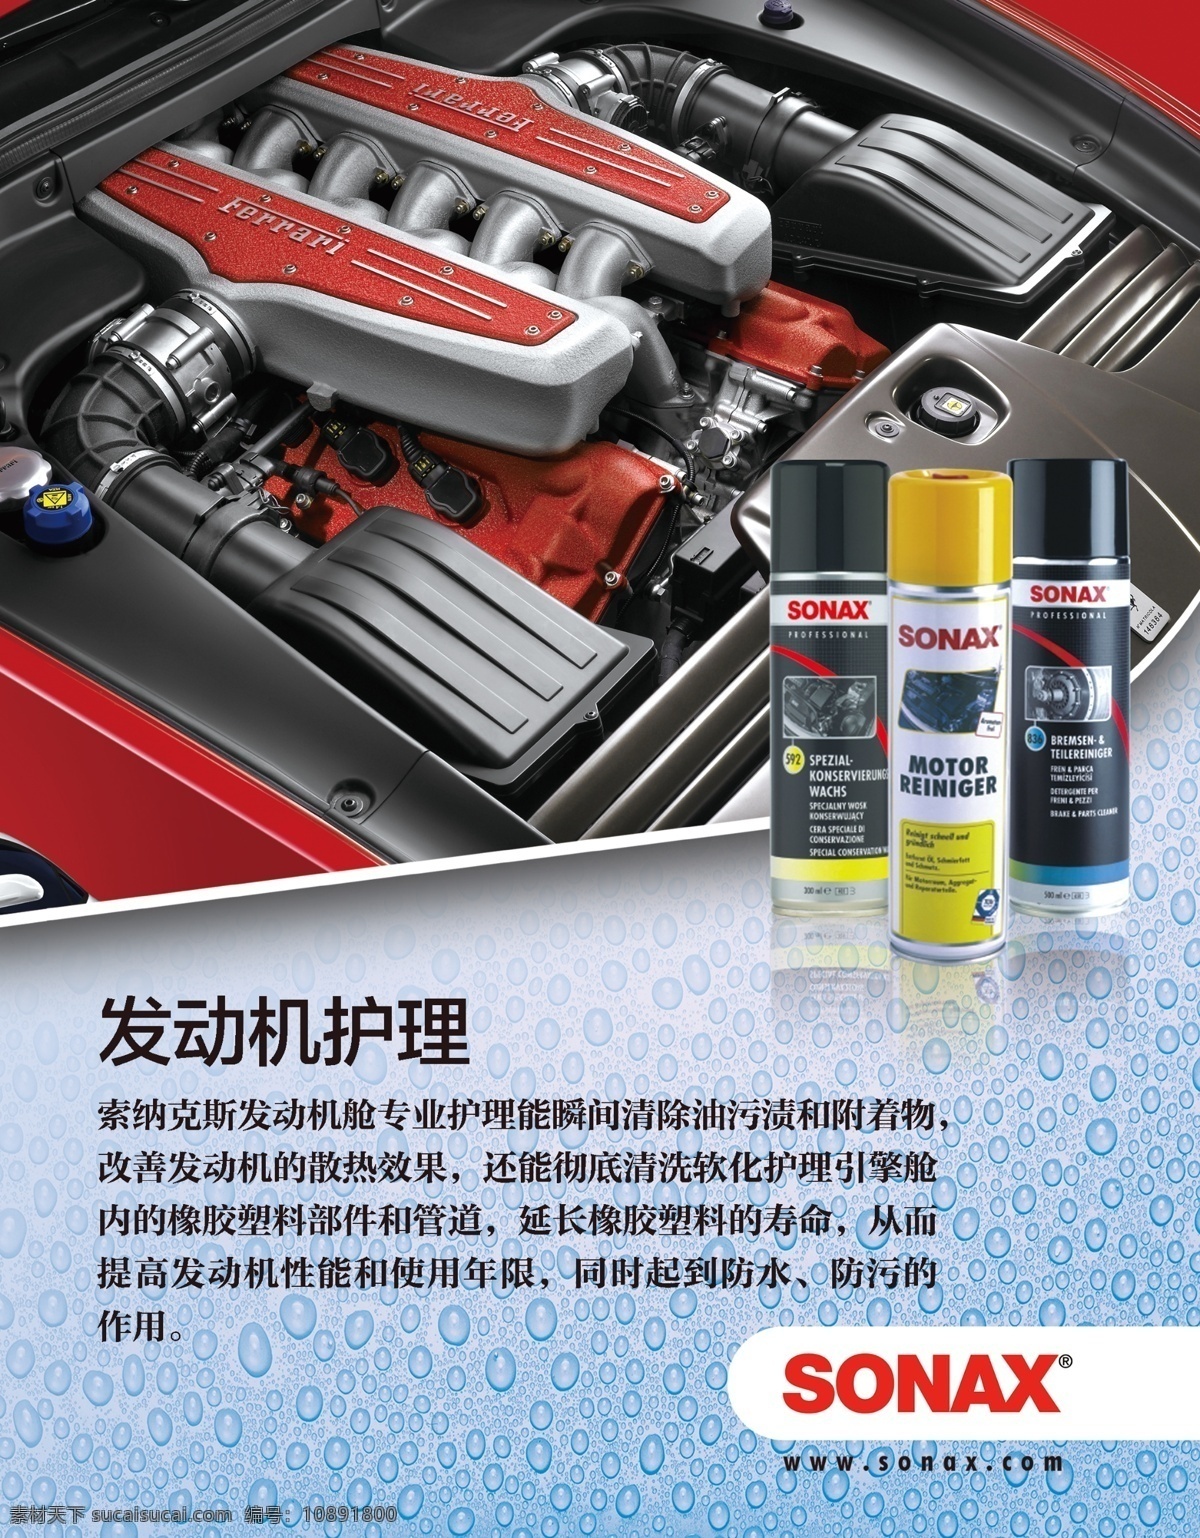 sonax 发动机 创意海报 汽车动力器 发动机护理 蓝色水滴背景 广告设计模板 源文件